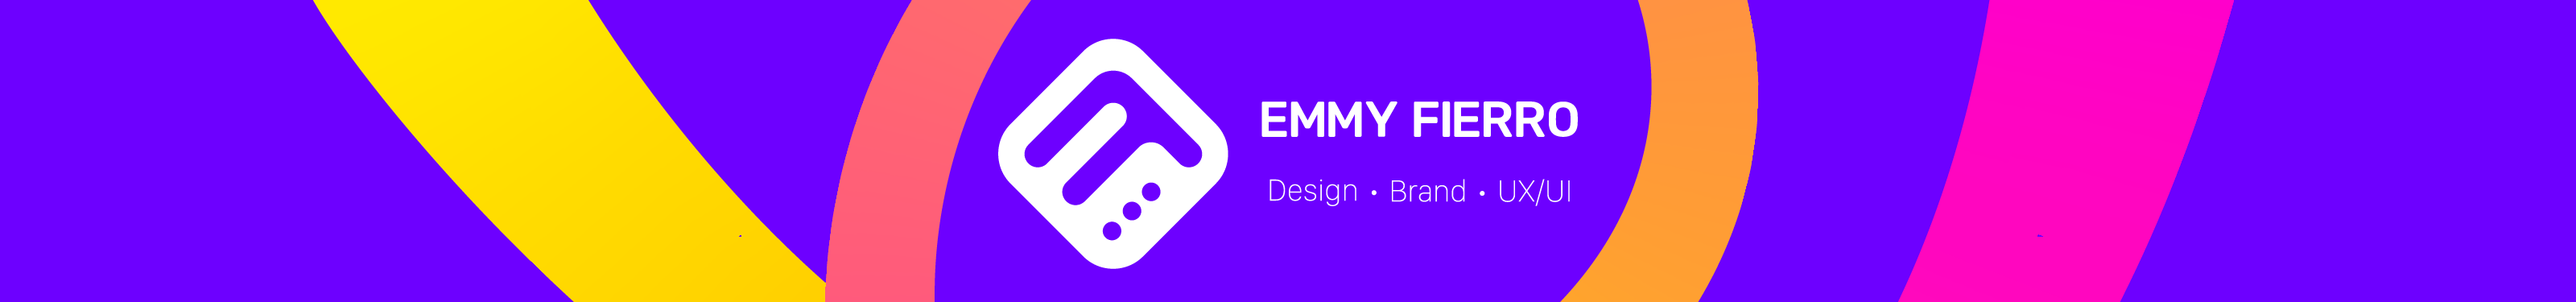 Emmy Fierro's profile banner